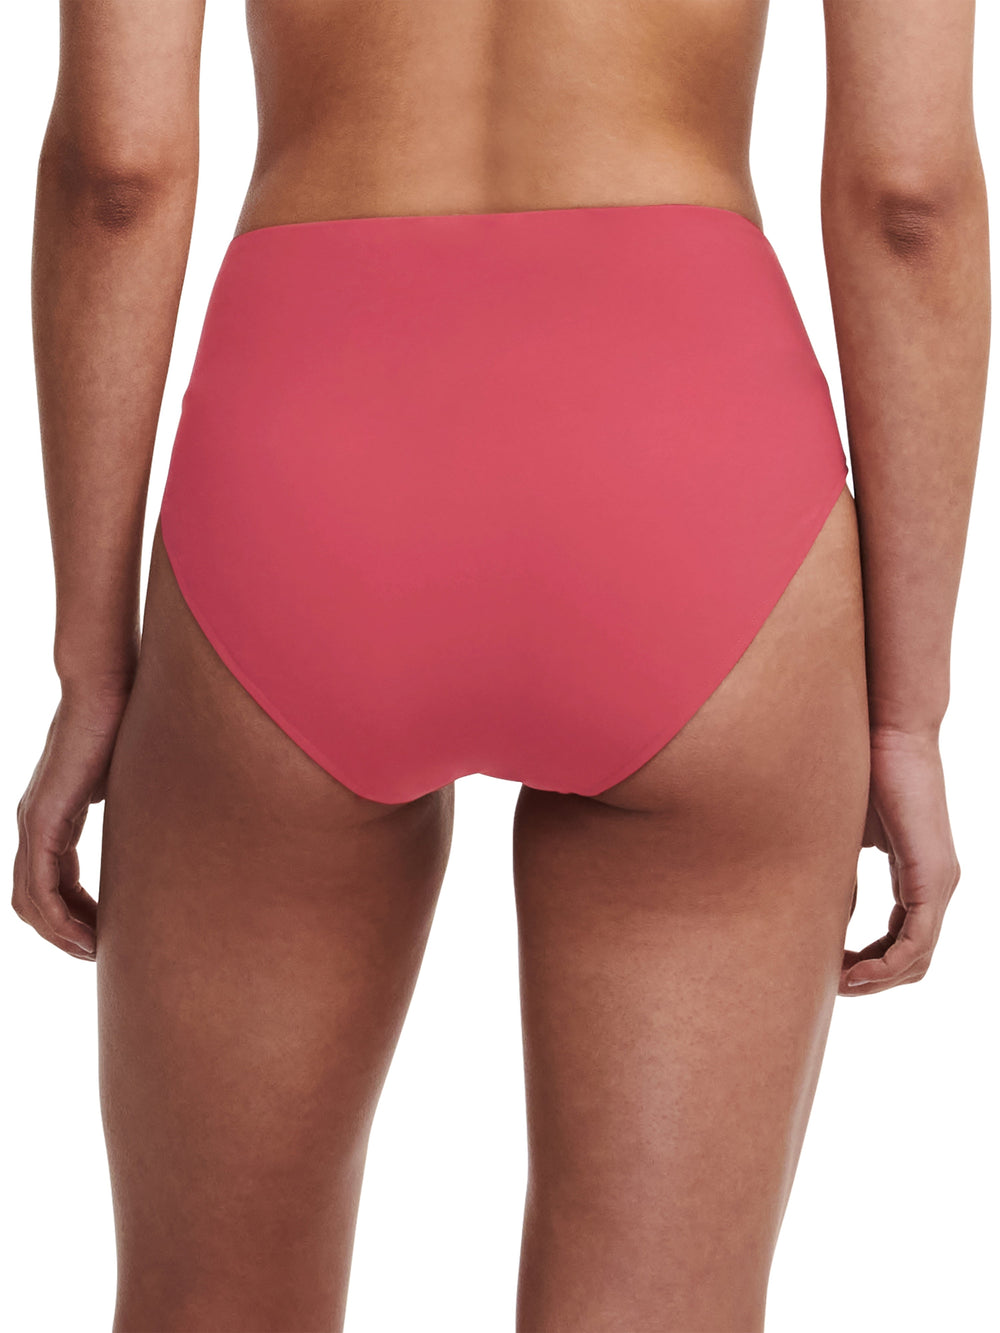 Chantelle Swimwear Inspire Full Brief - Braguita de bikini rojo granate Chantelle